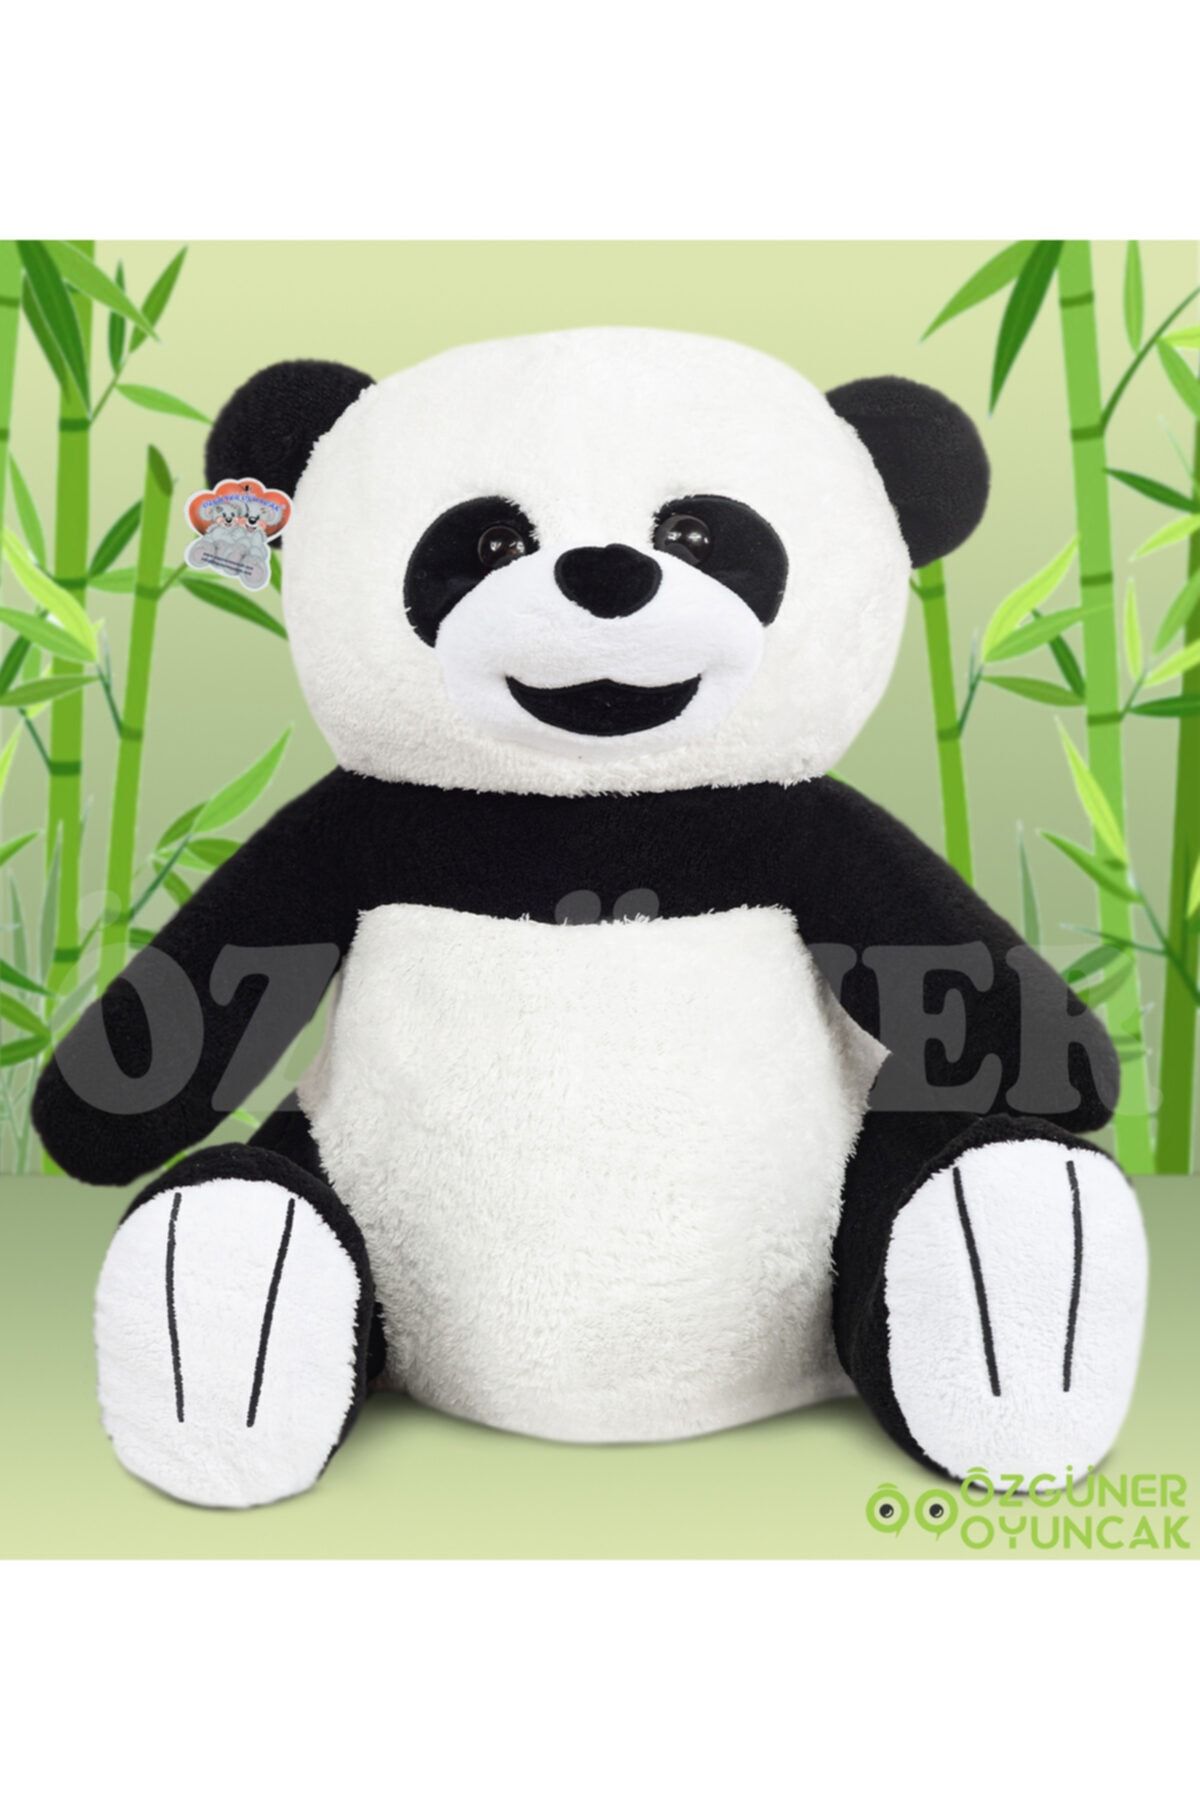 Özgüner Oyuncak Sevimli Panda No 2